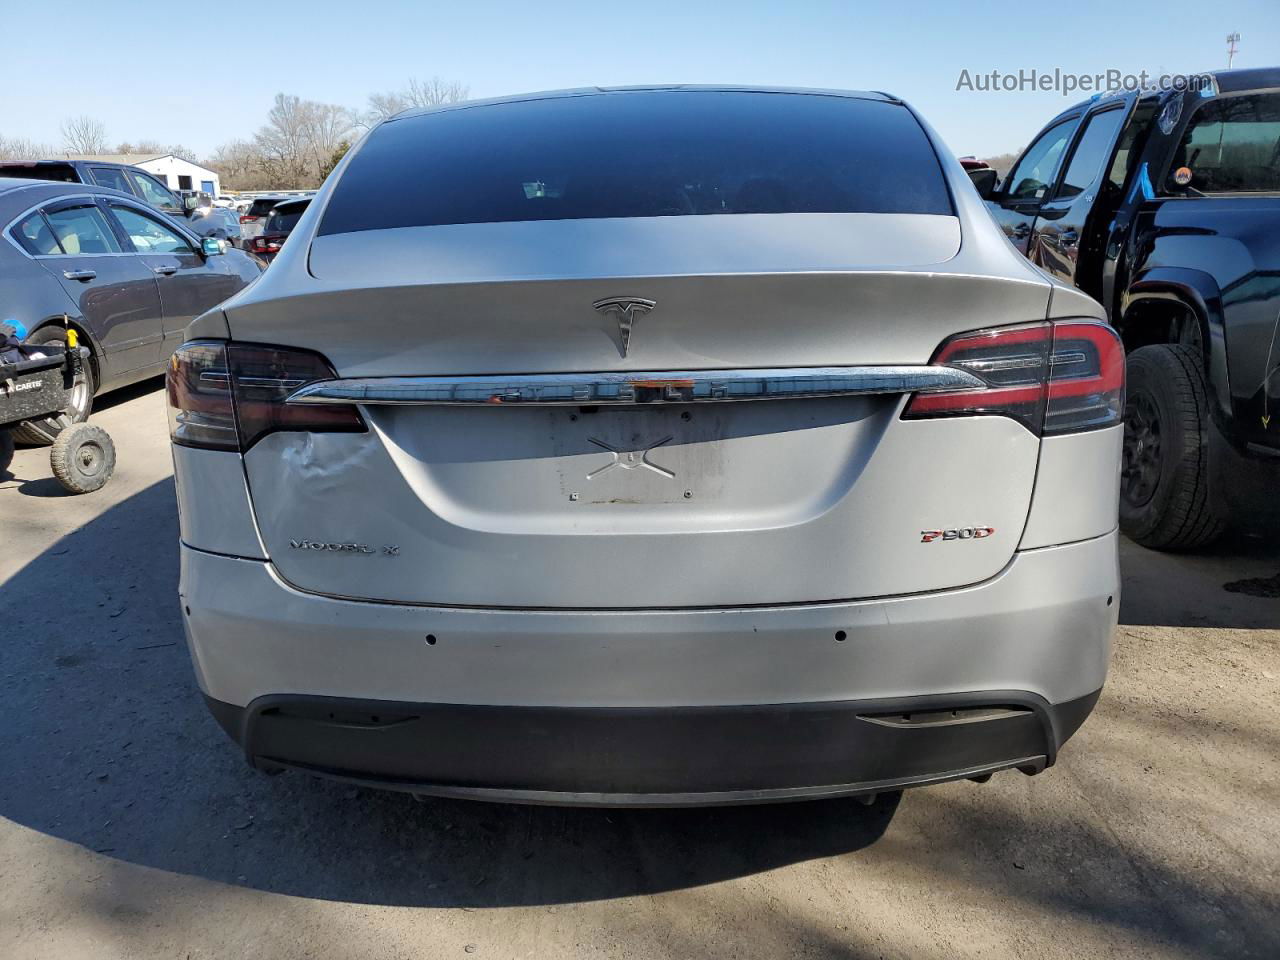 2016 Tesla Model X  Серебряный vin: 5YJXCAE45GF003771